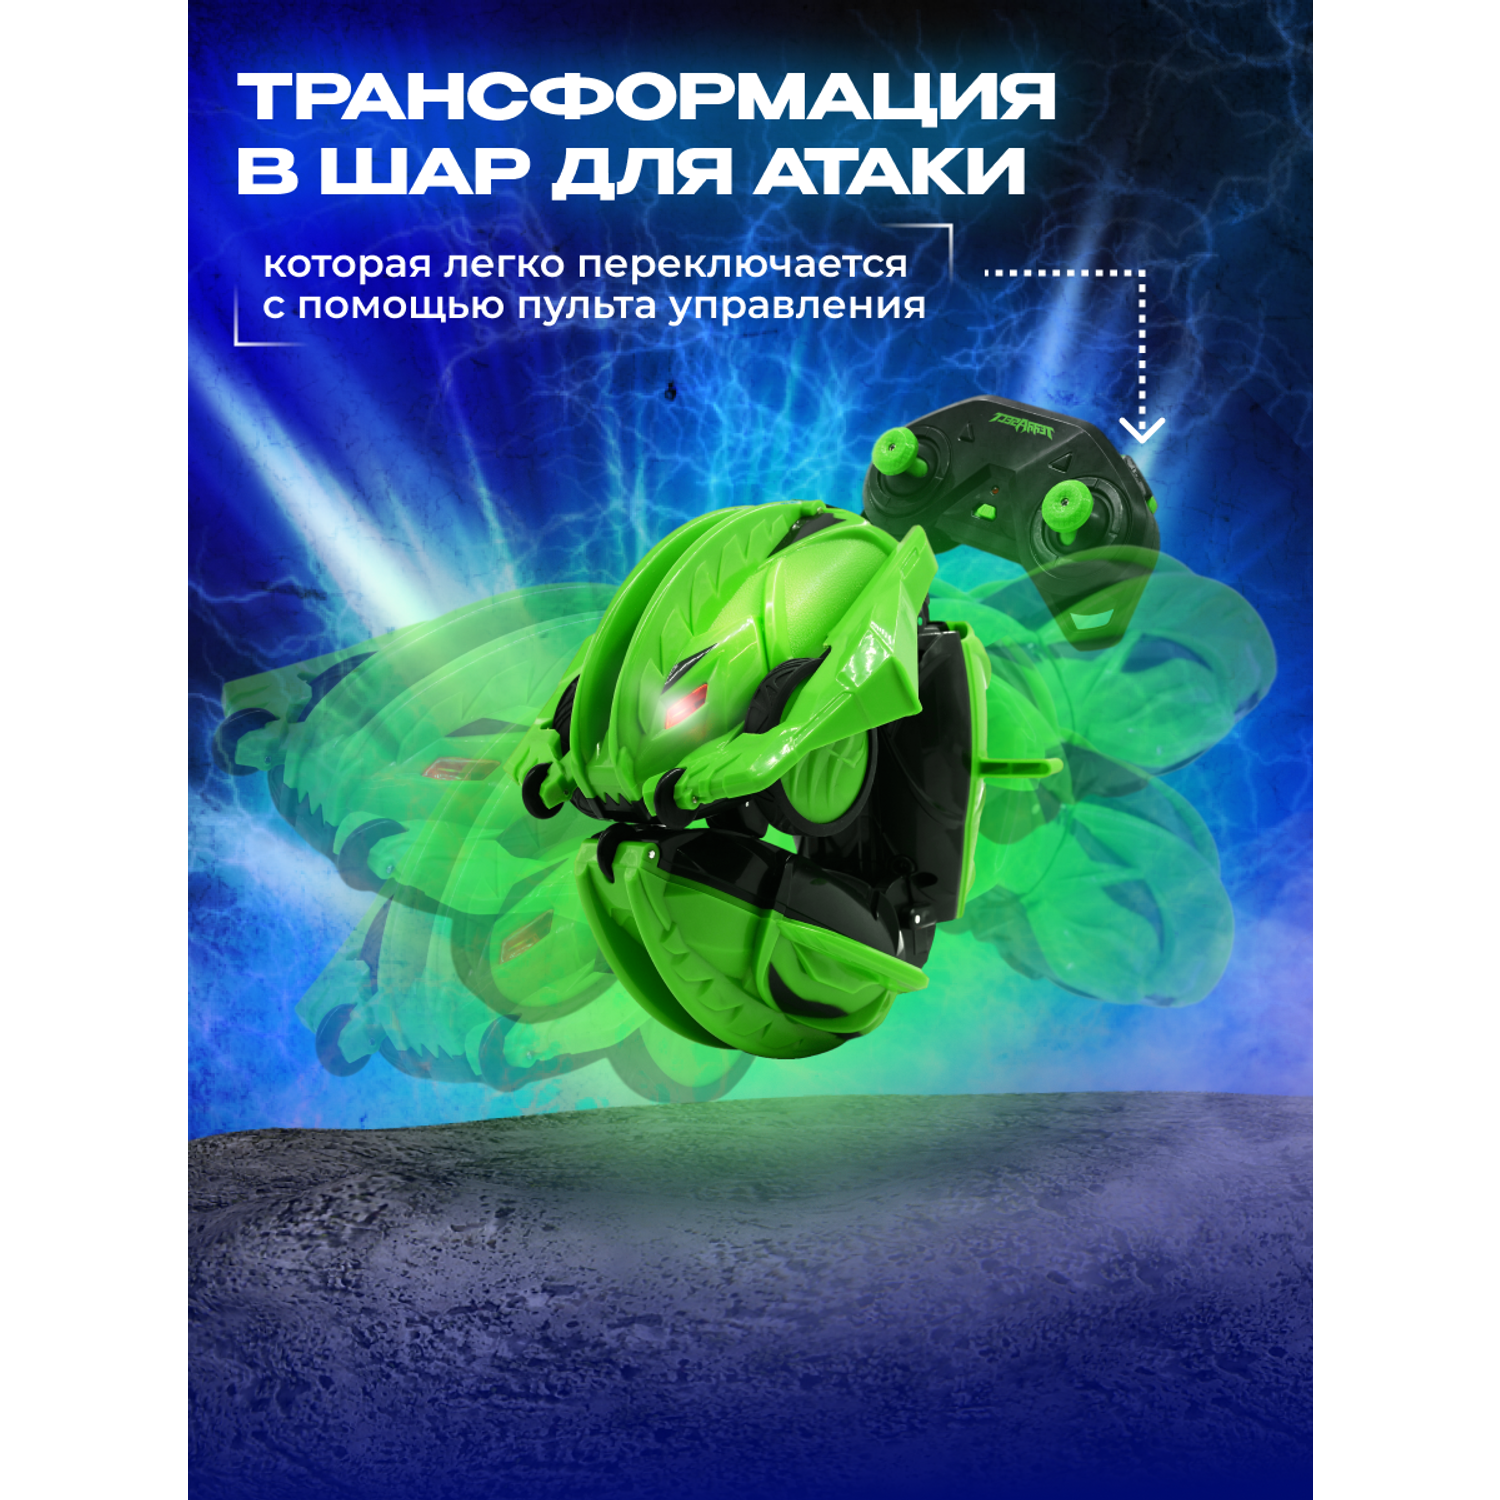 Игрушка радиоуправляемая Terra Sect машинка трансформер в виде ящерицы зеленая - фото 7